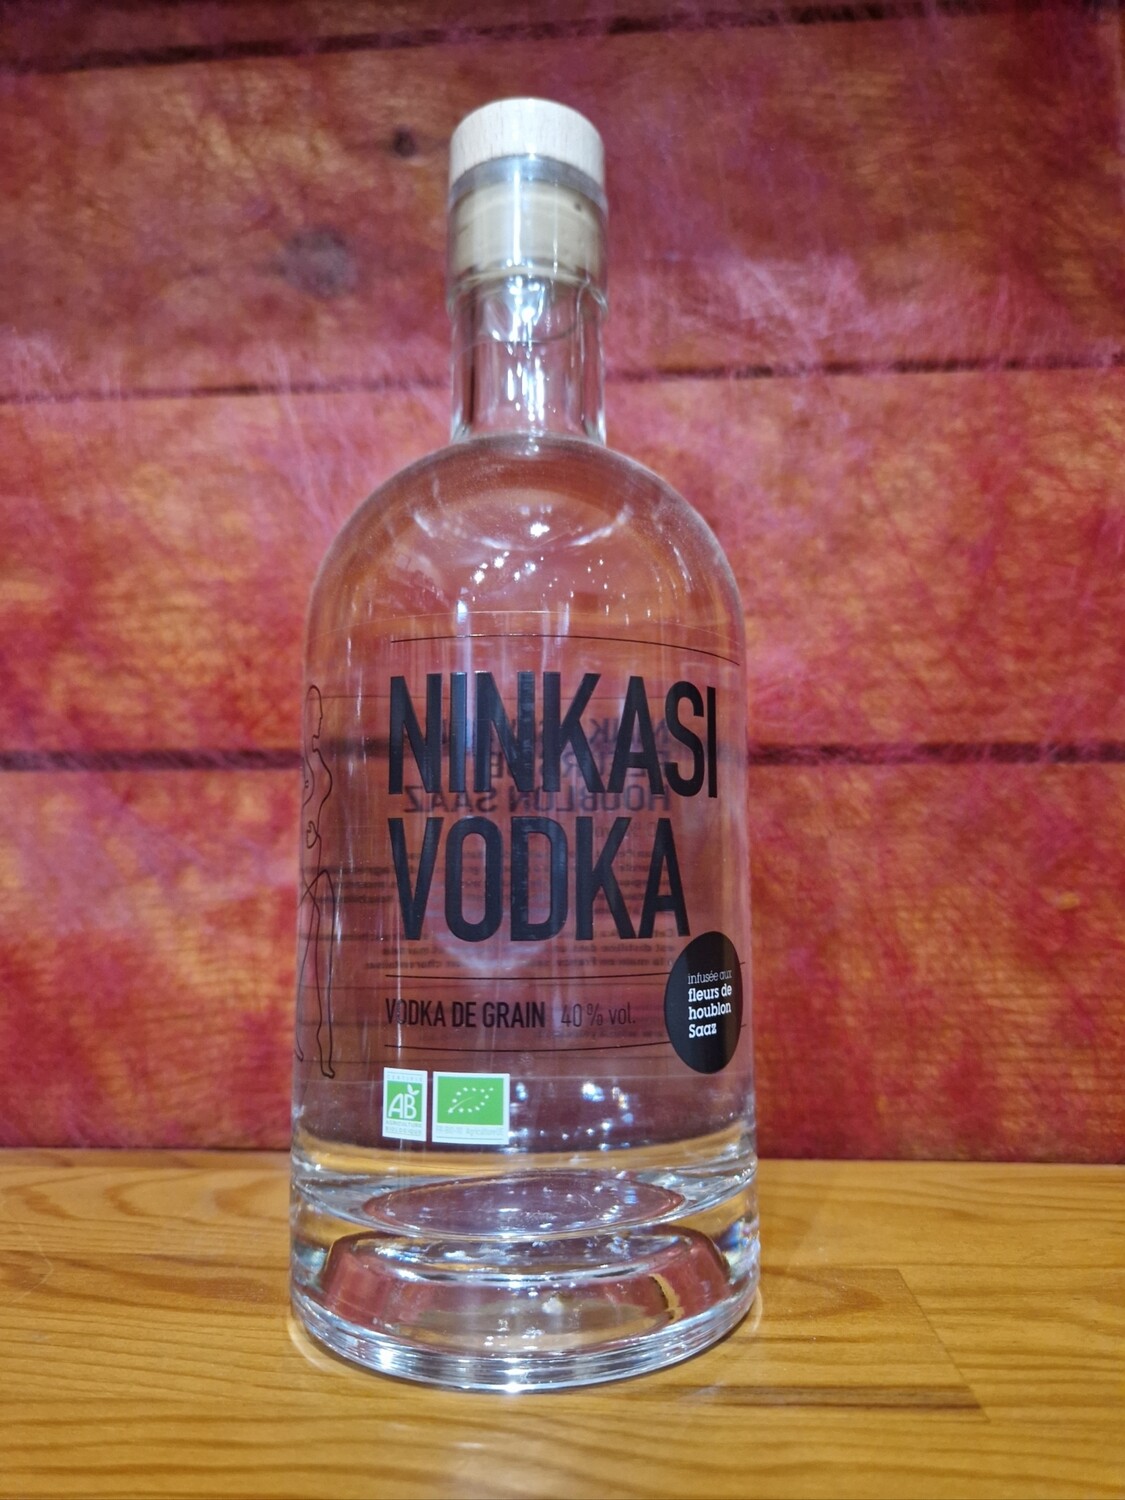 Vodka Ninkasi